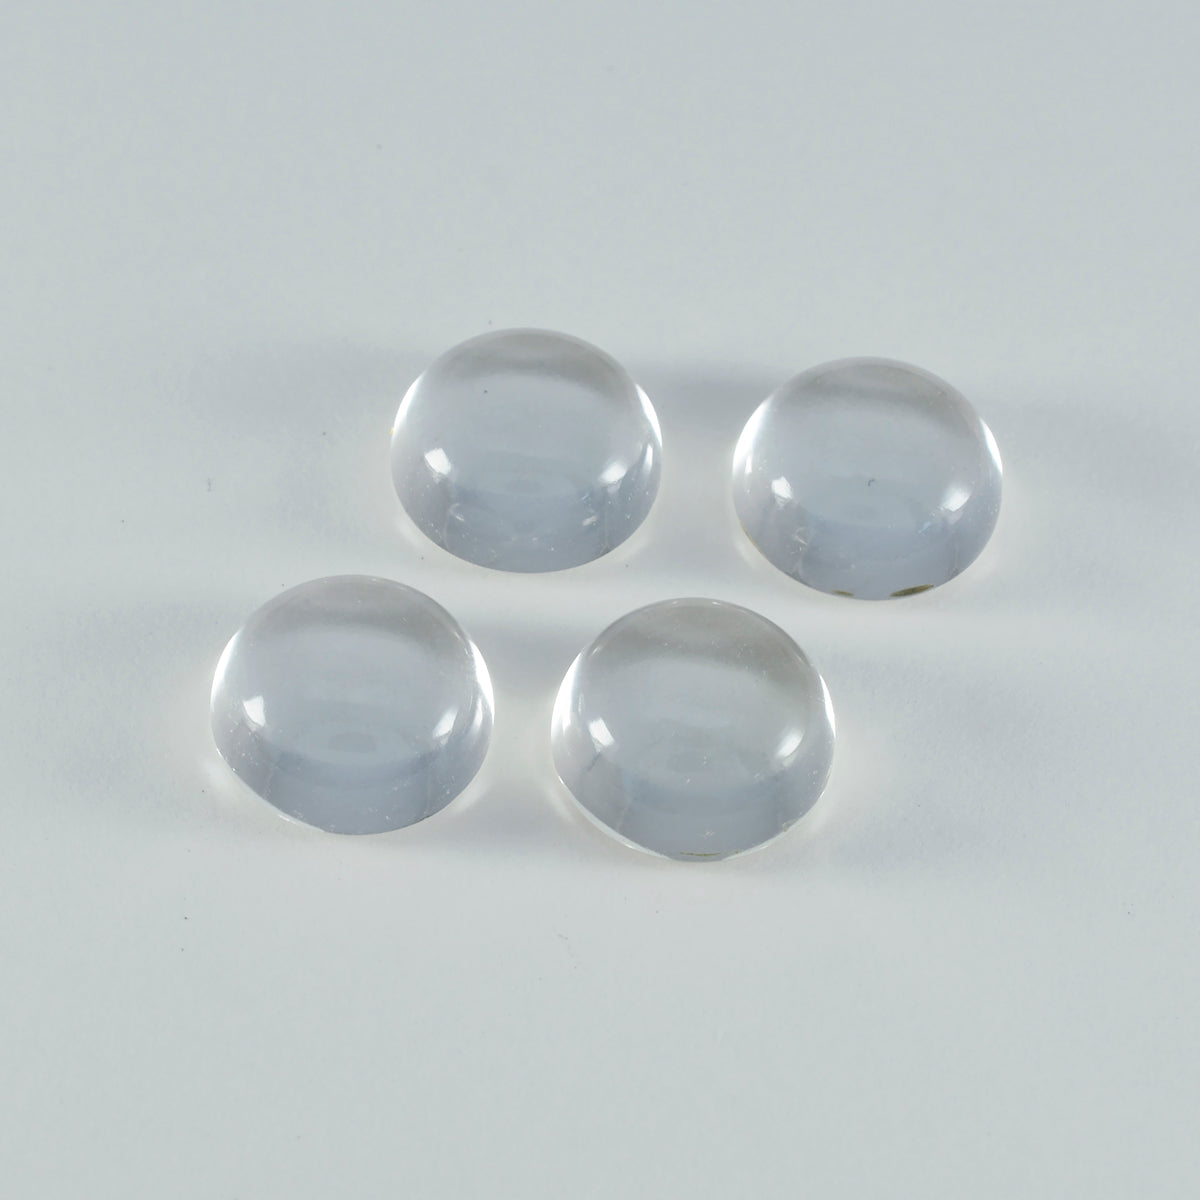 Riyogems 1PC witte kristalkwarts cabochon 9x9 mm ronde vorm goede kwaliteit steen